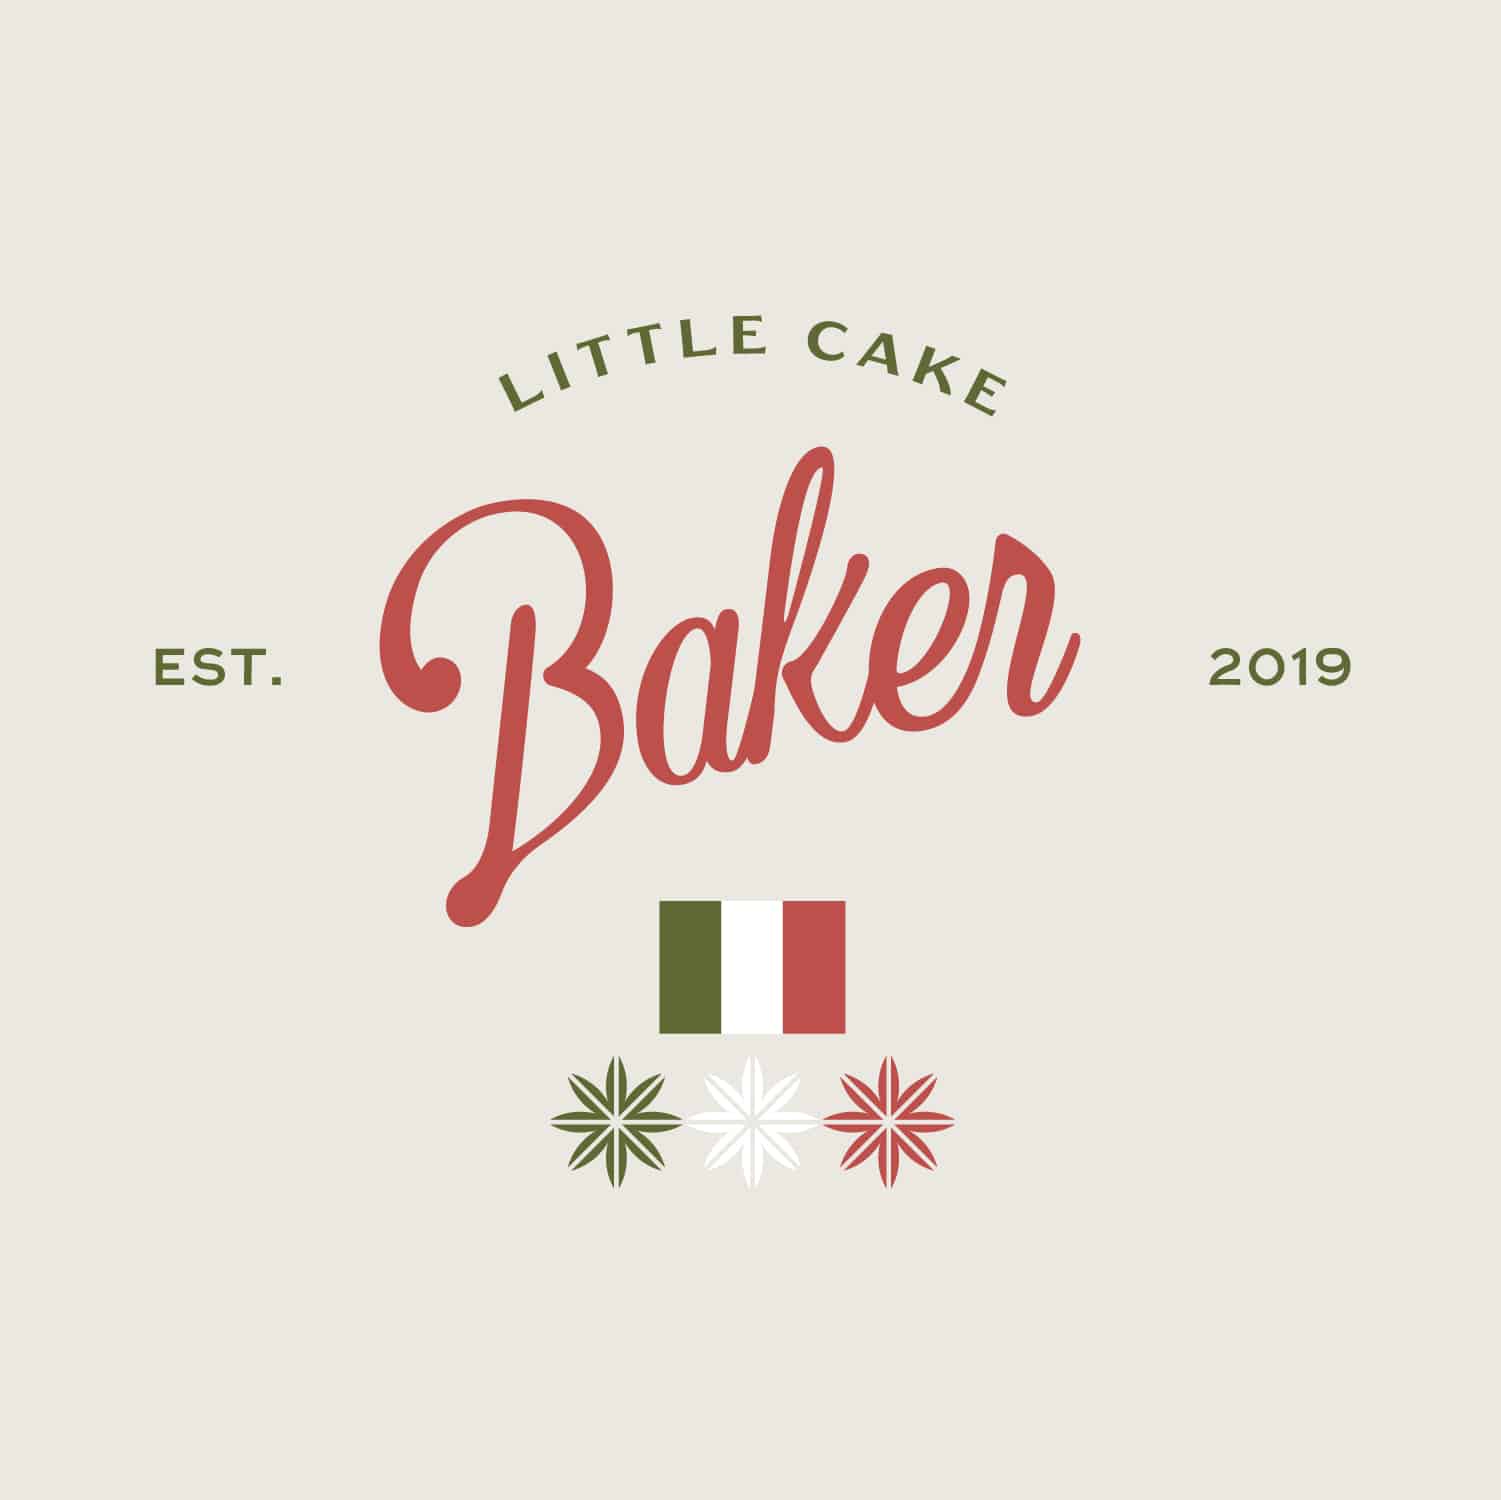 Logo Designs for Little Cake Baker Brittany Lomardi by Stellen Design Branding Agency in Los Angeles California